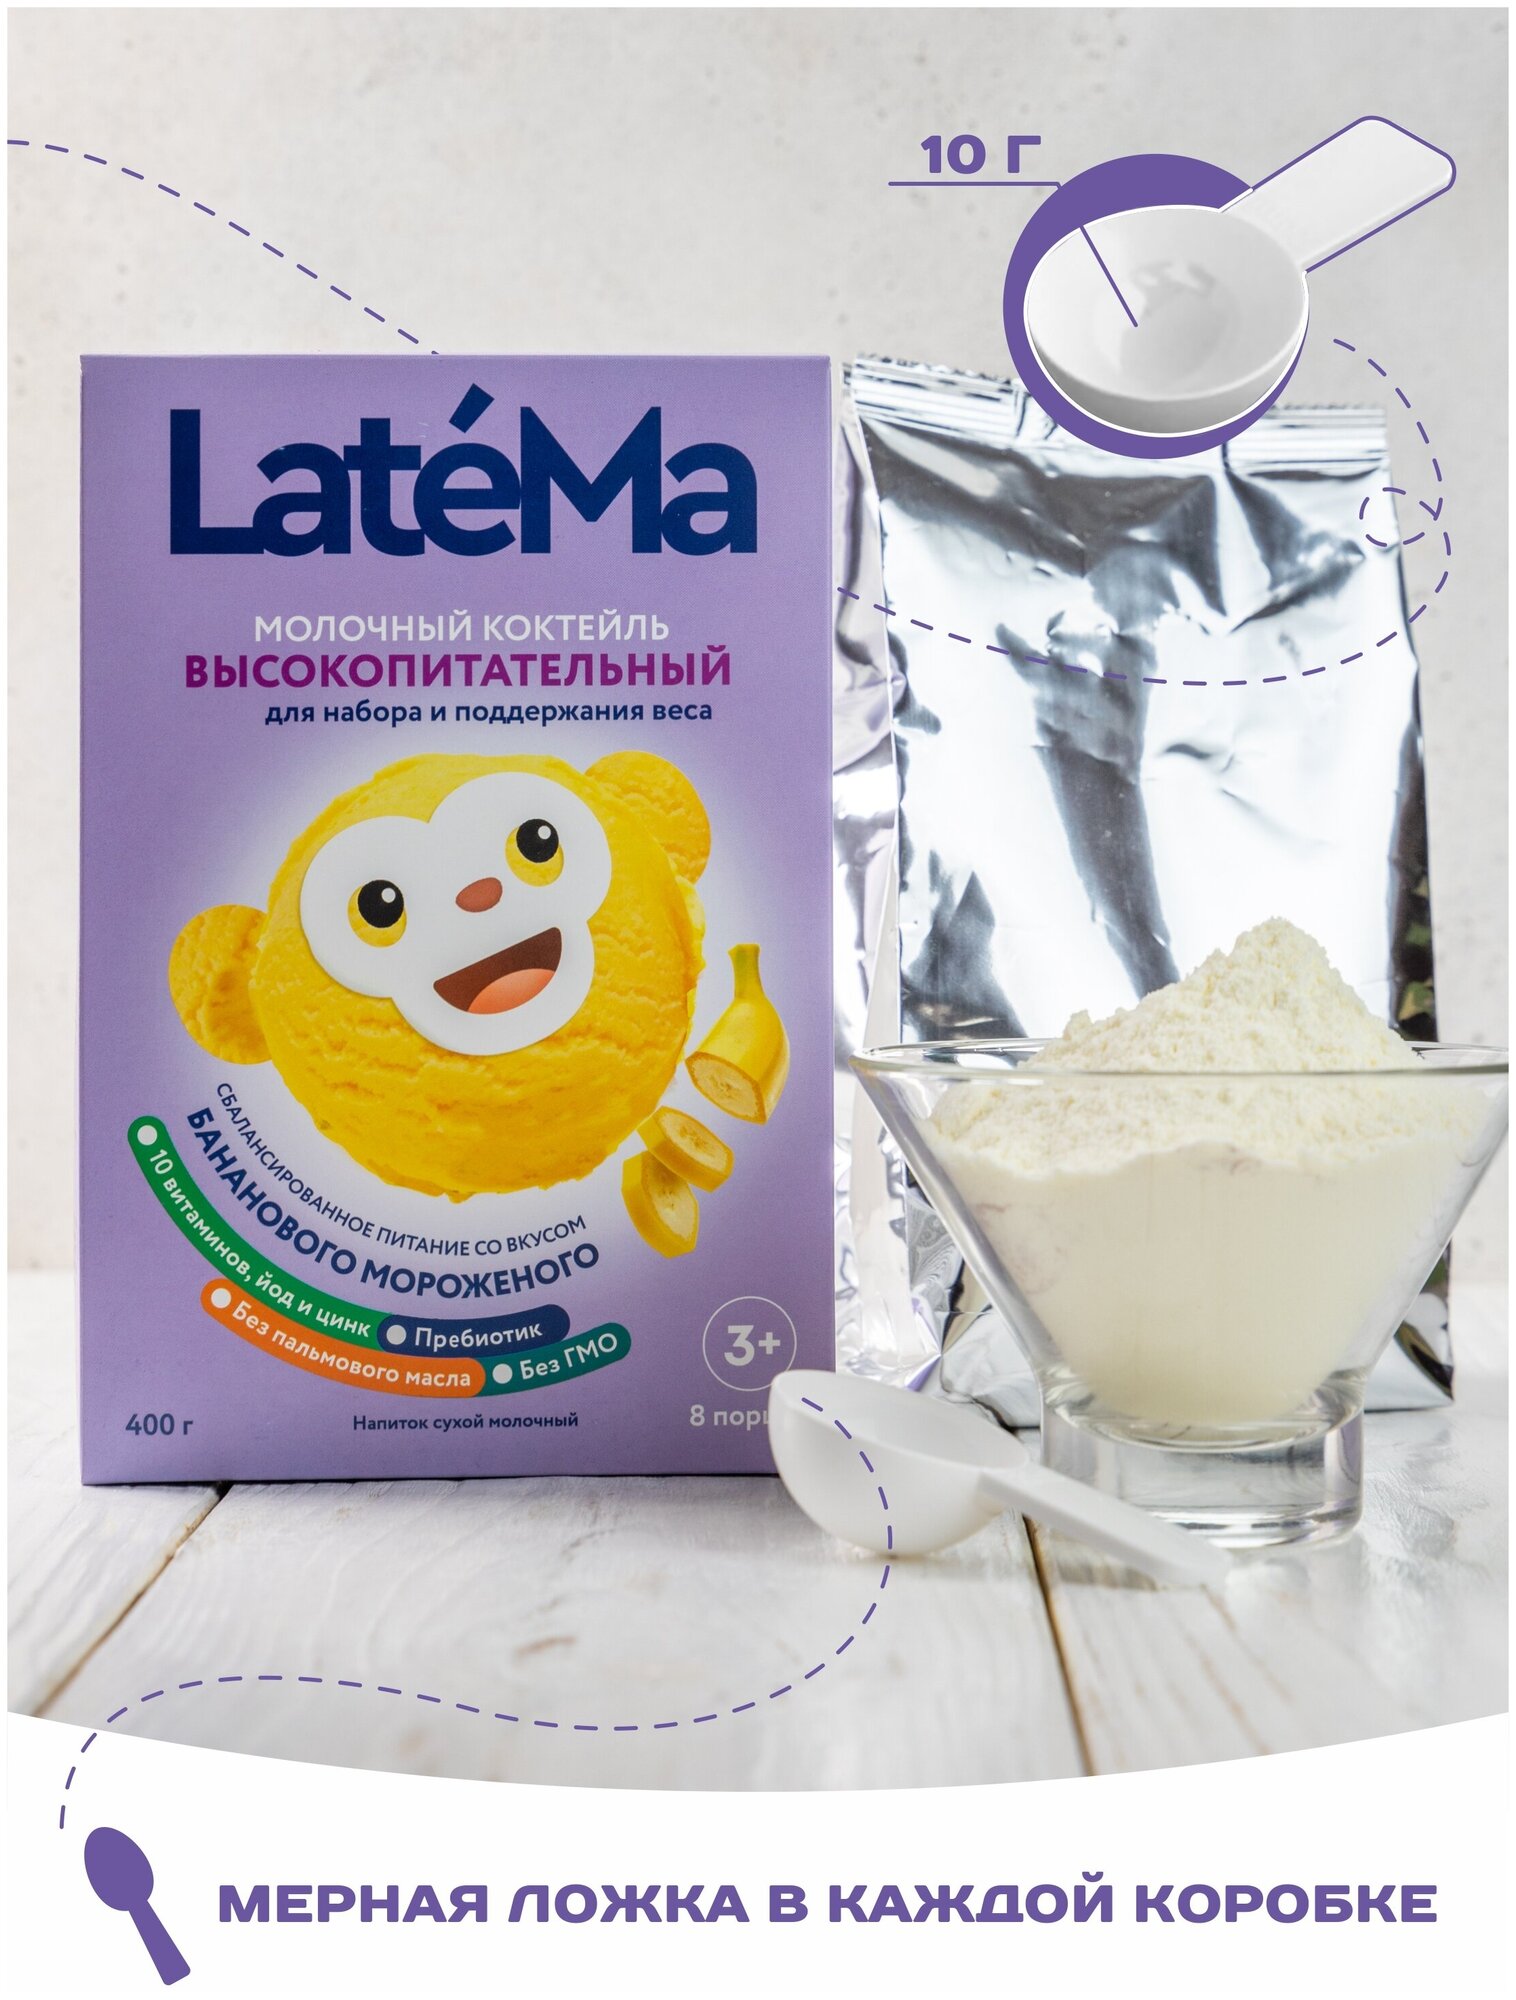 Молочная смесь для приготовления коктейля LateMa высокопитательная (для набора и поддержания веса) со вкусом бананового мороженого